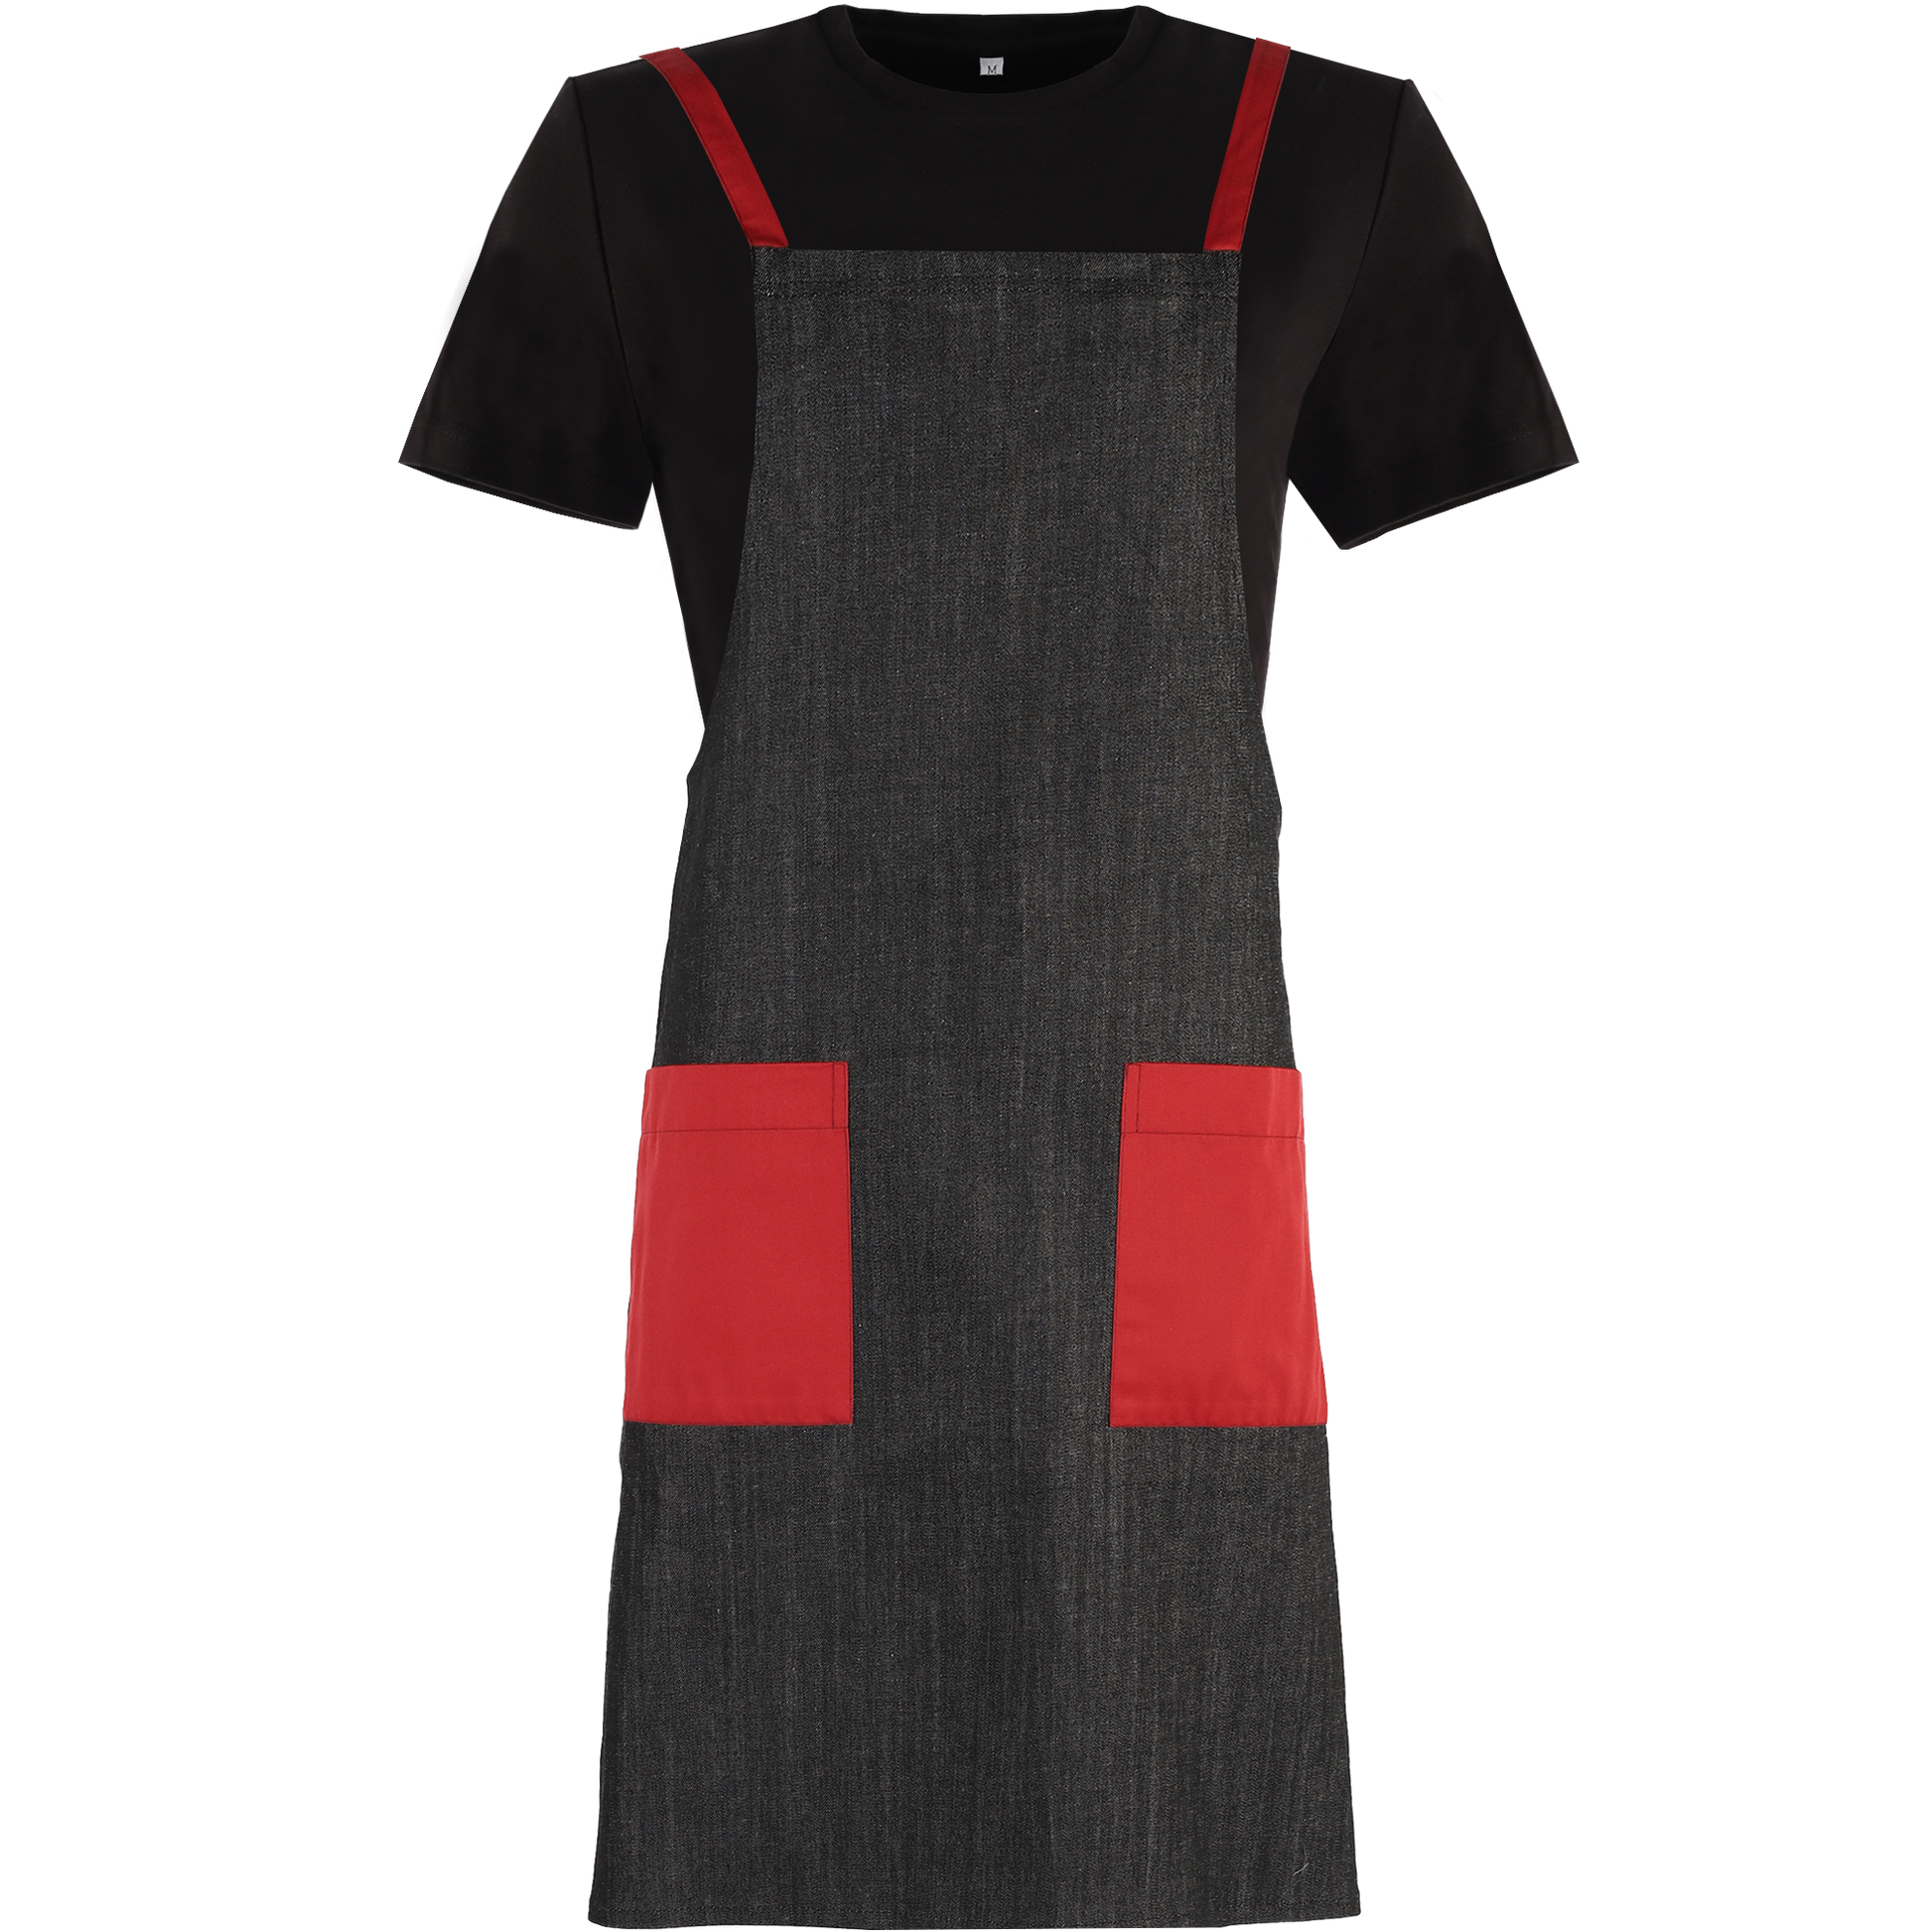 Denim Bib Apron with Red Trims | Stylish uniforms by CYC